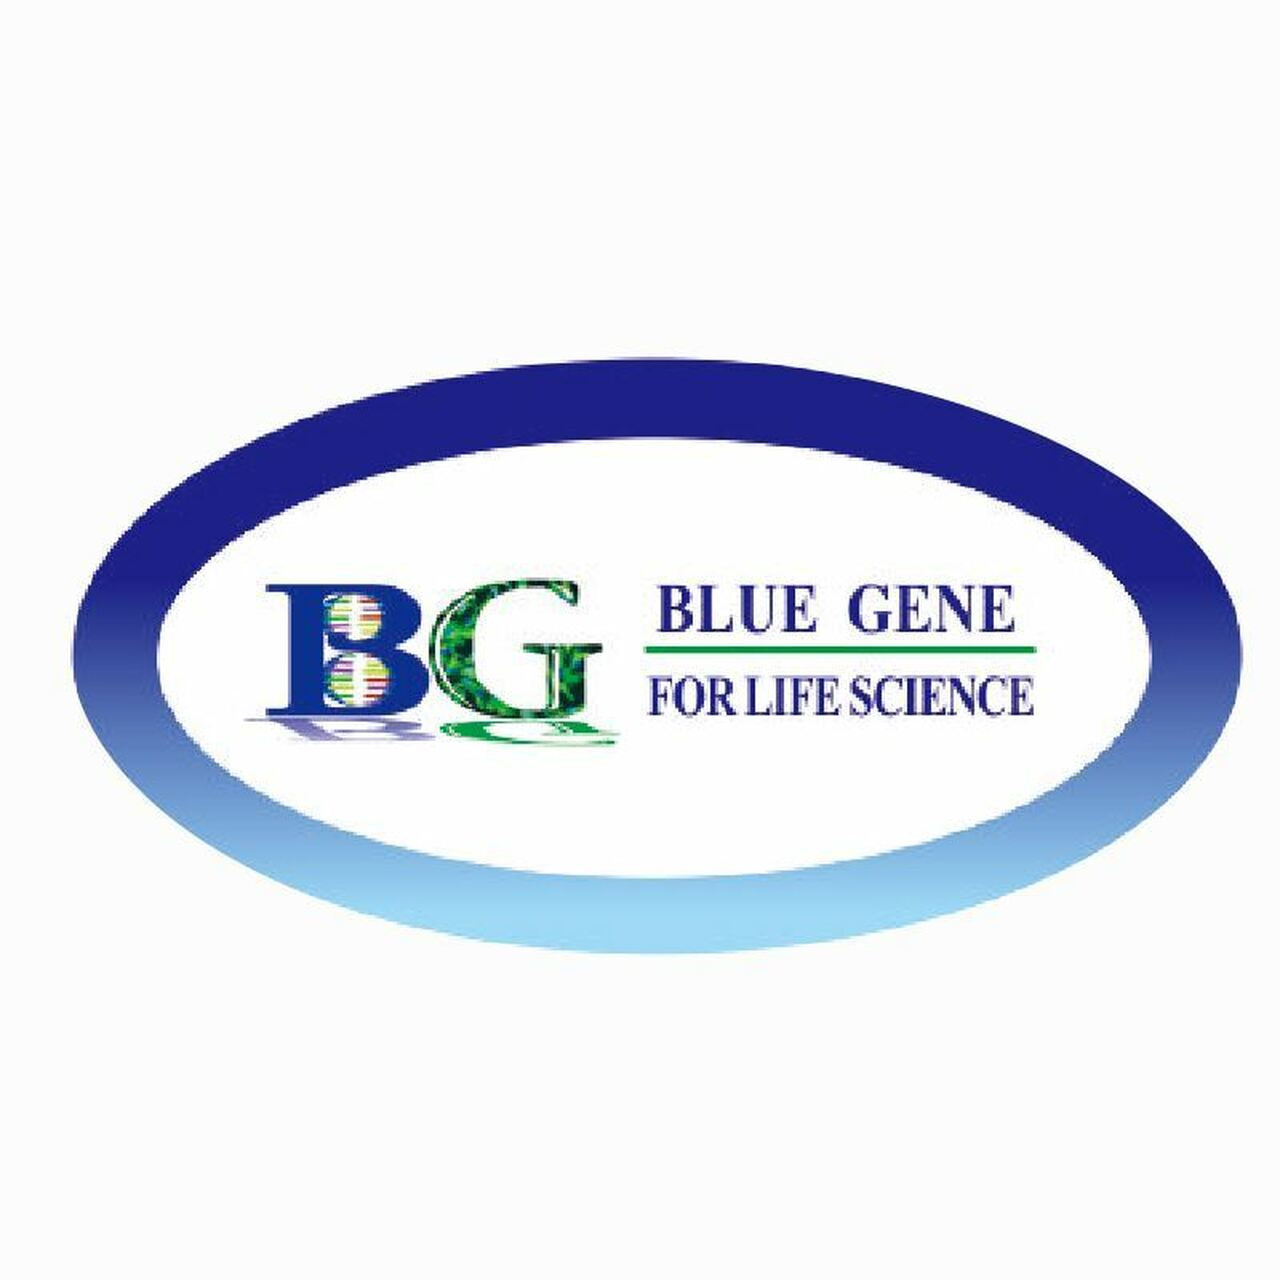 bluegene-urinary-retinol-binding-protein-elisa-kit